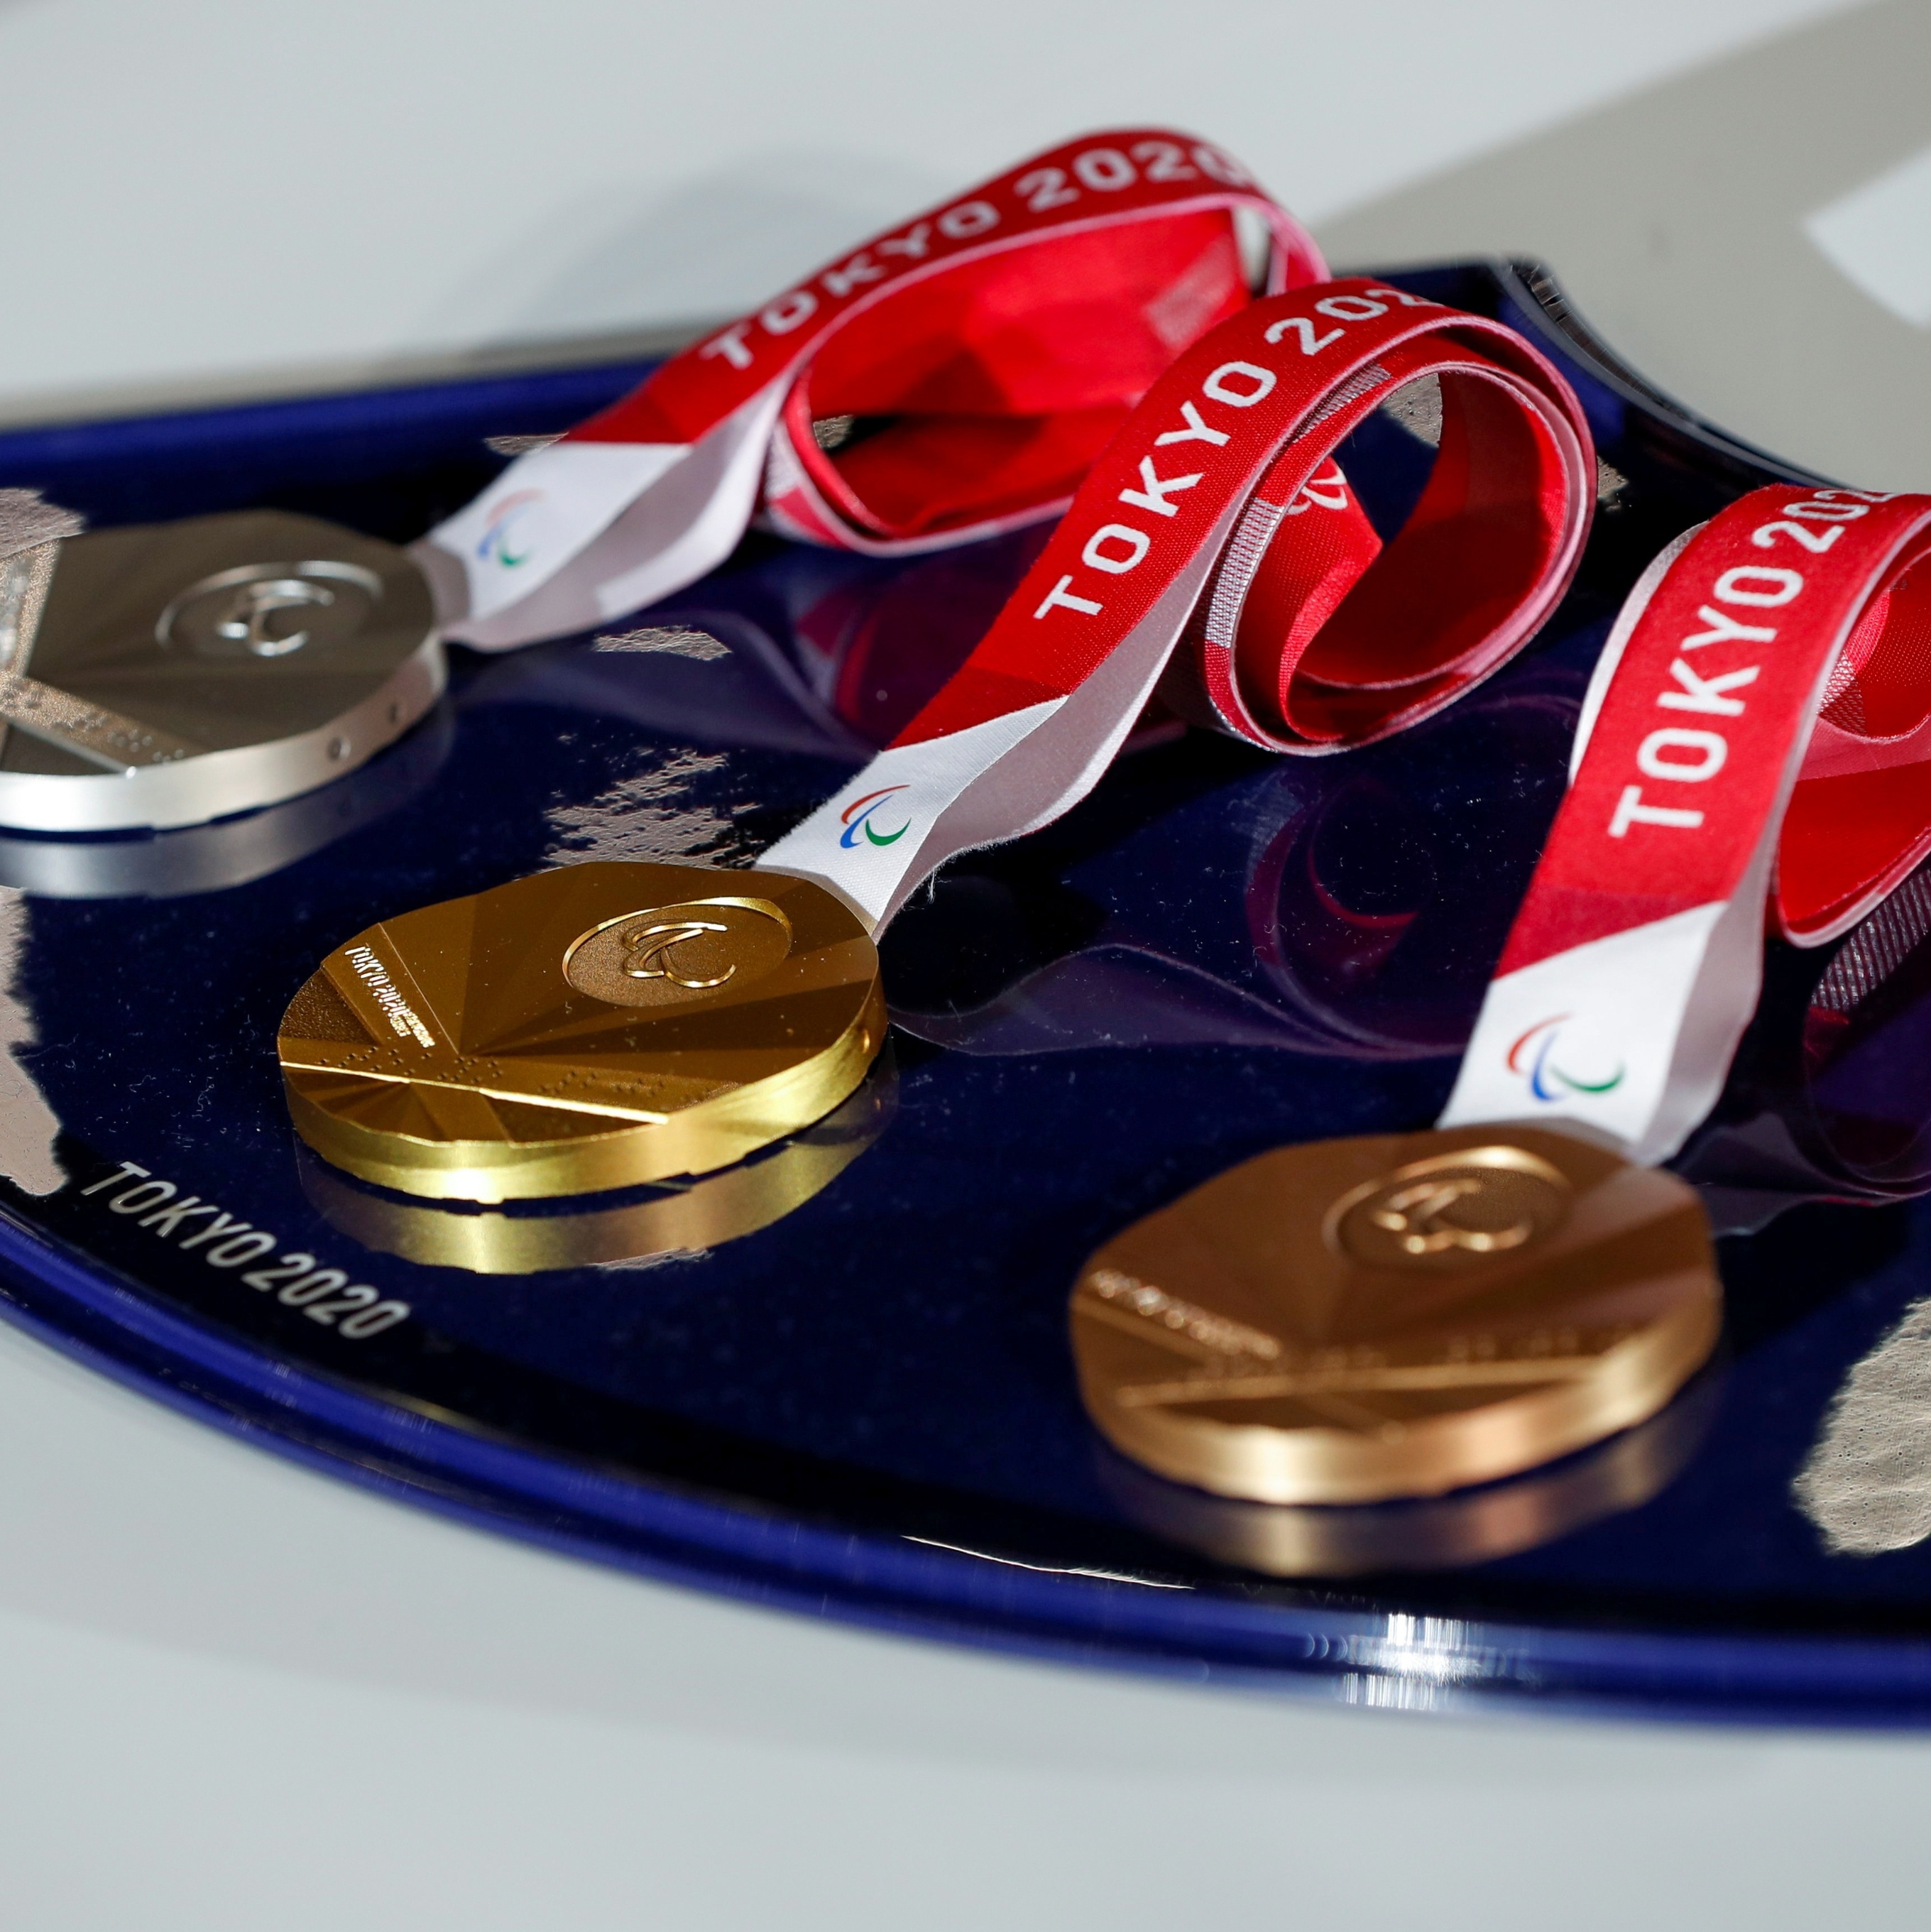 Após jogos olímpicos de Tóquio, colecionadores travam corrida por medalhas  que chegam a valer R$ 10 mil - Jornal O Globo